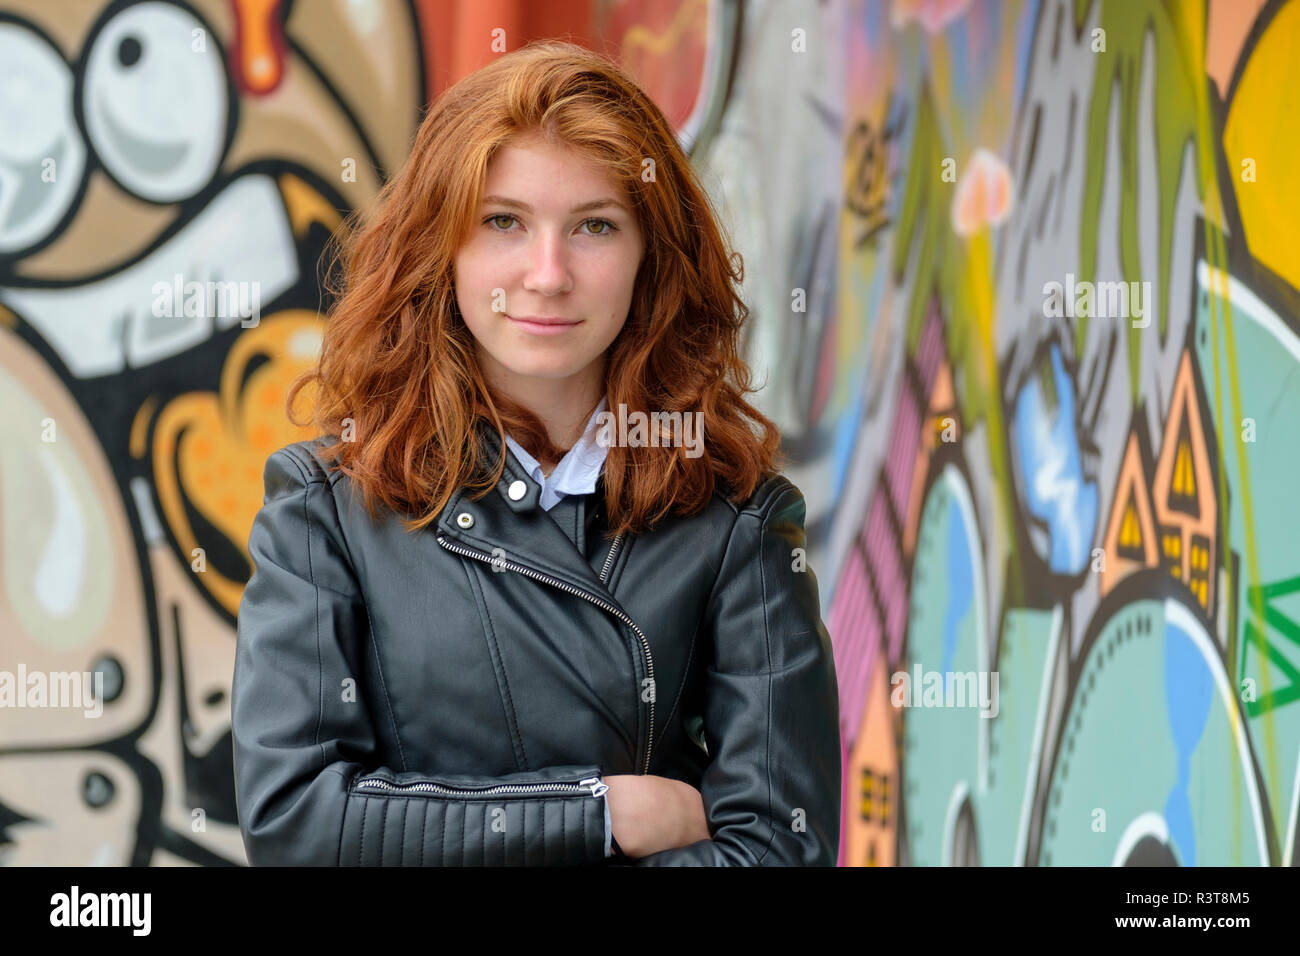 Italia, Finale Ligure, retrato de una adolescente pelirroja vistiendo la chaqueta de cuero negro en la parte delantera de mural Foto de stock